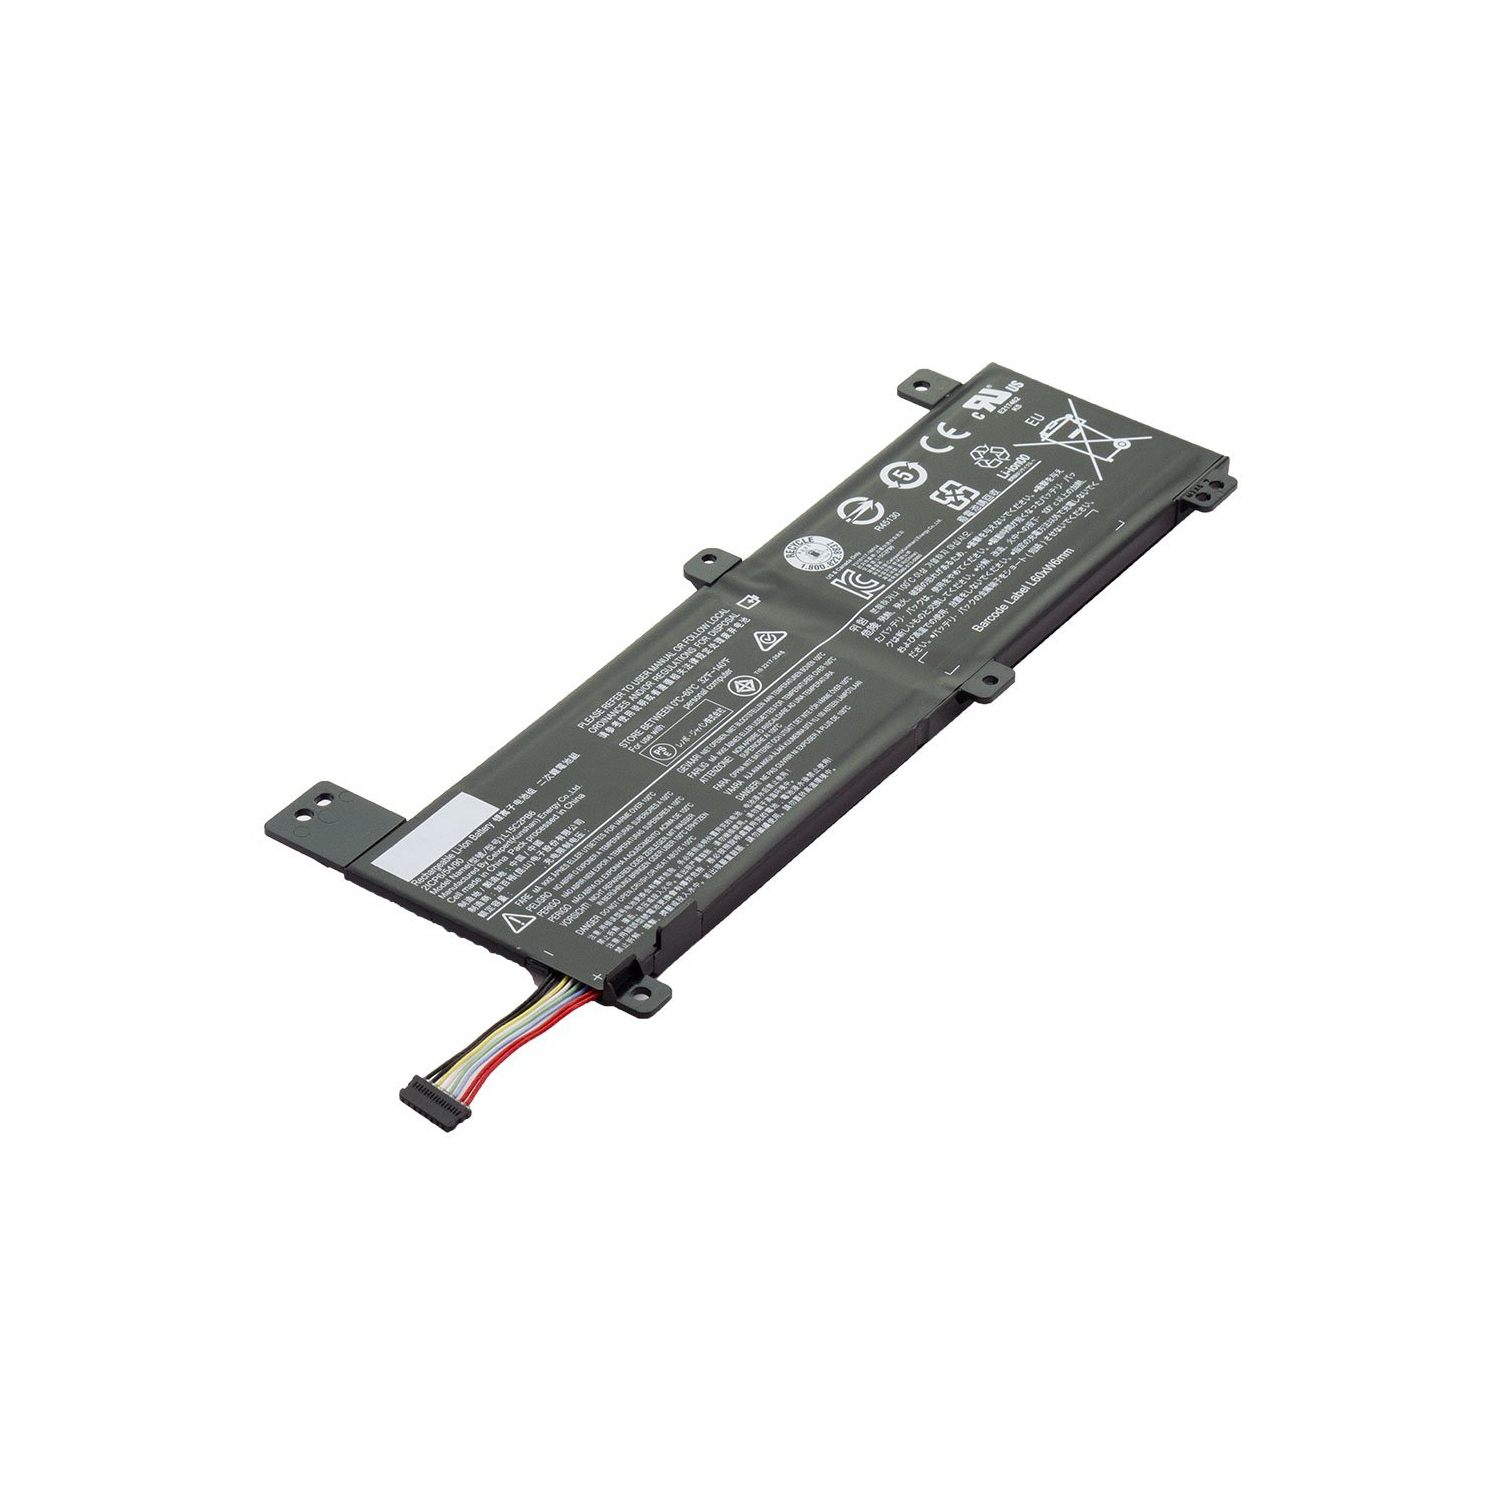 Laptop Battery Replacement for Lenovo IdeaPad 310 14ISK 80SL001WTA, IdeaPad 310 14ISK, L15C2PB6, L15L2PB2, L15M2PB4